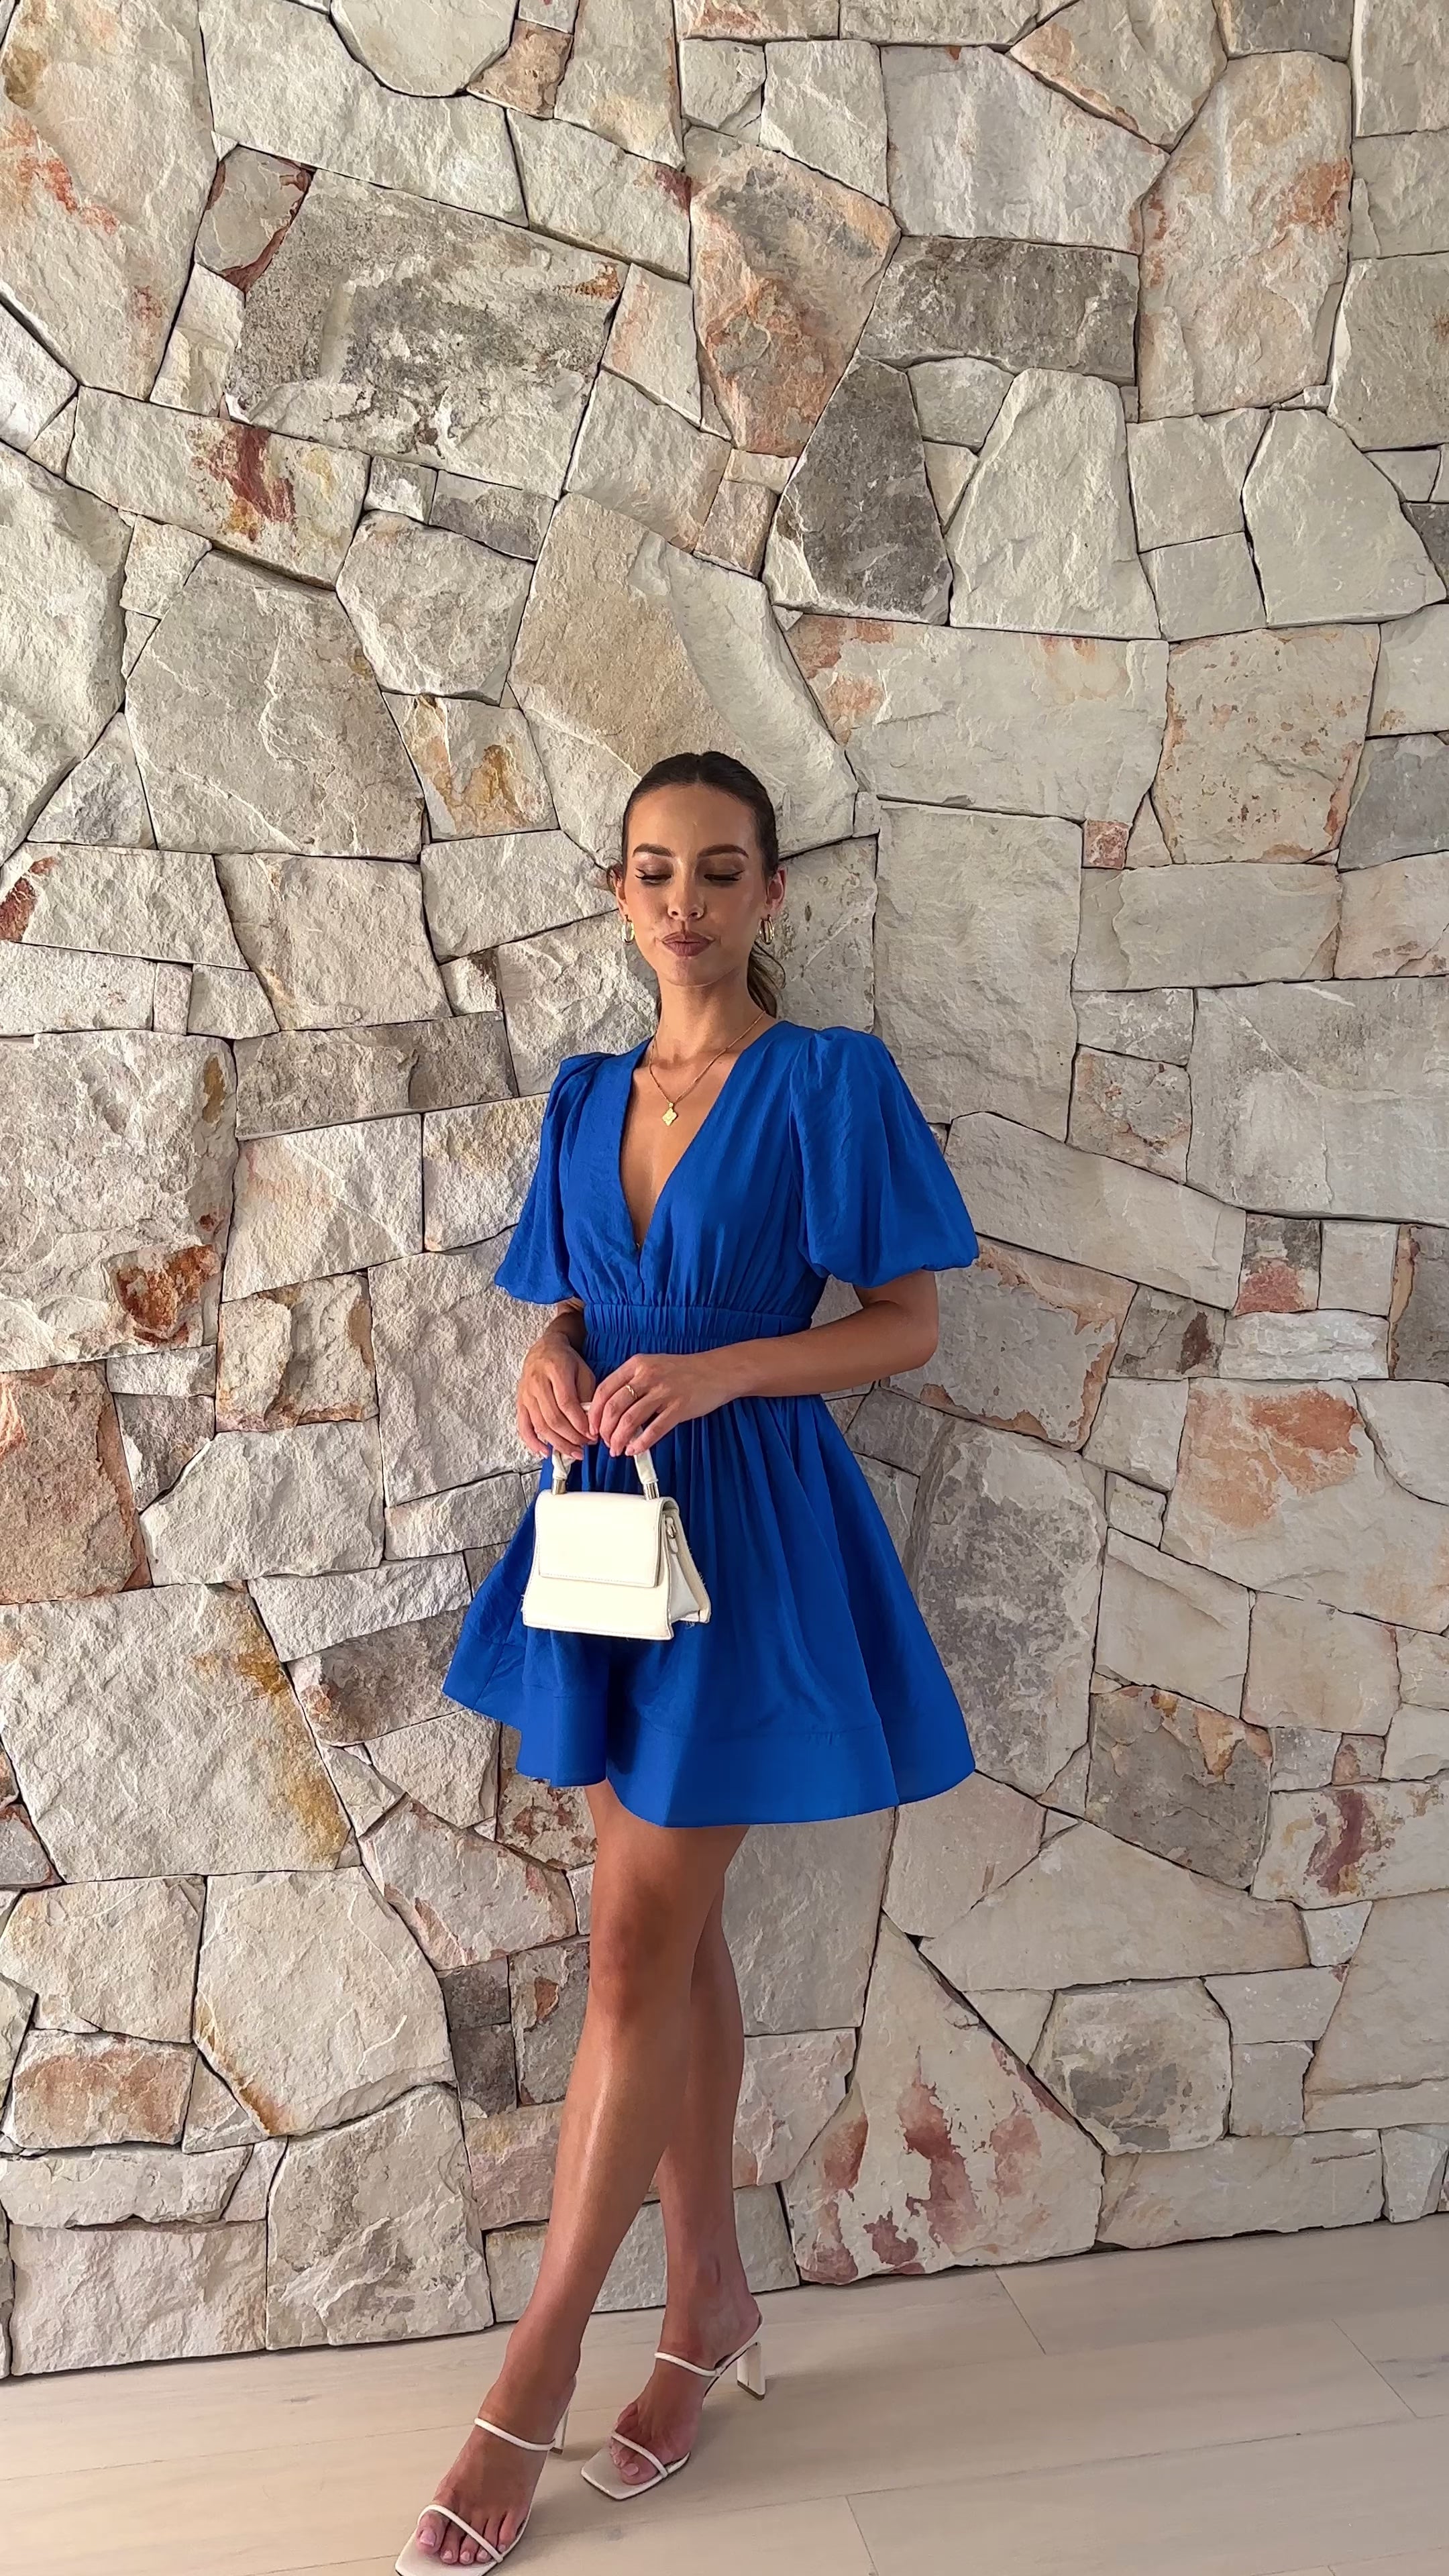 Erin Mini Dress - Royal Blue